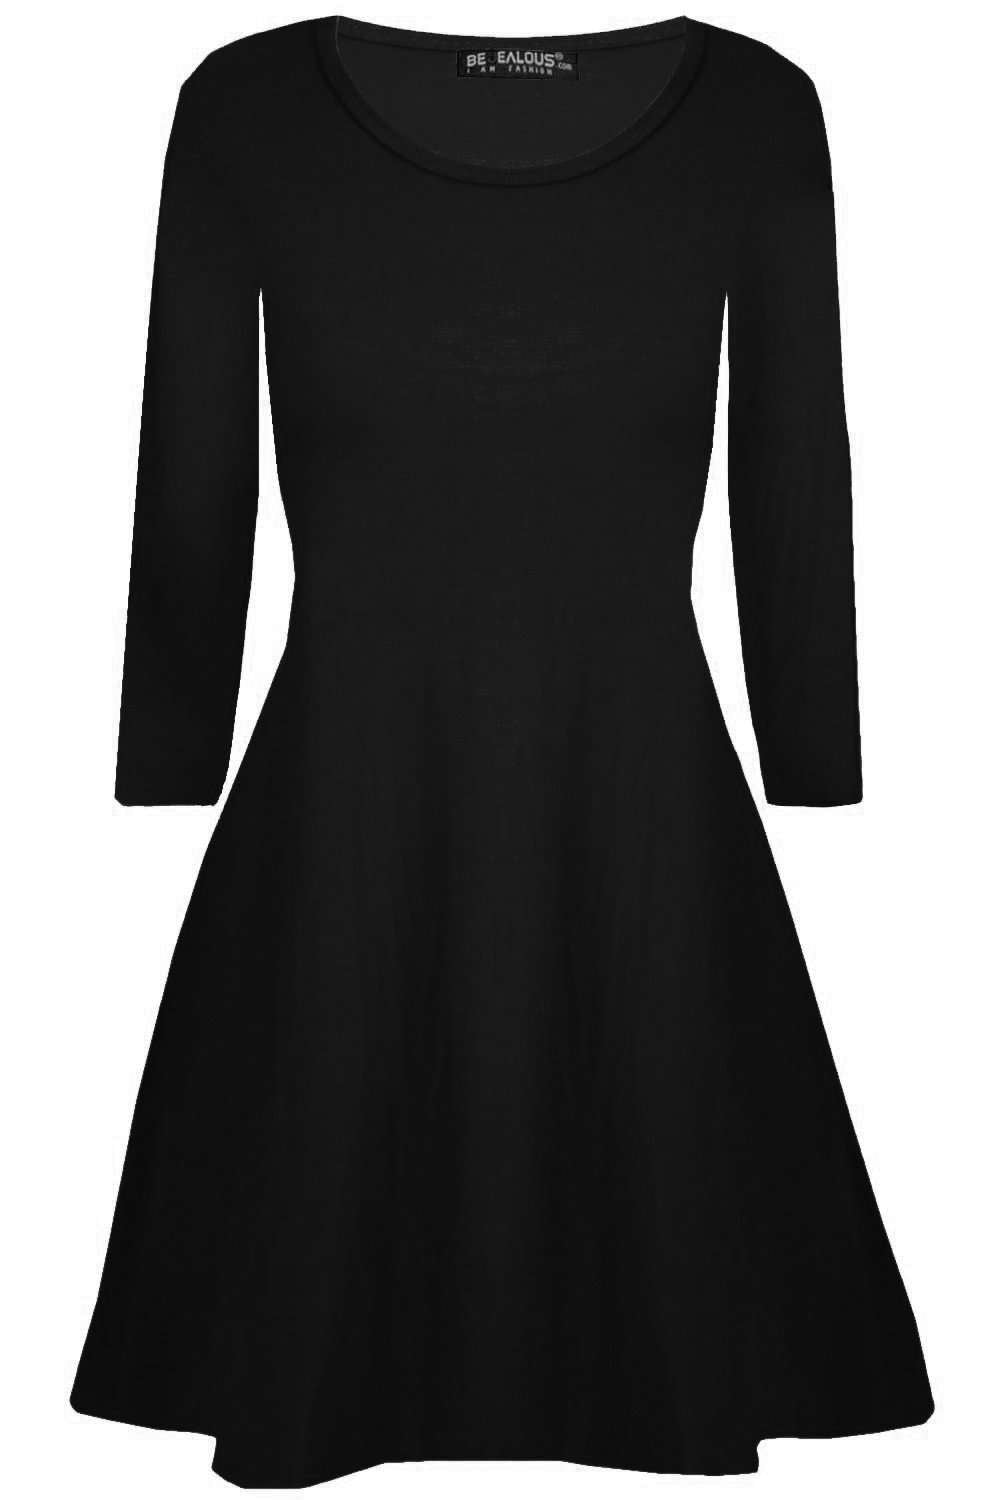 Lottie Plus Long Sleeve Mini Swing Dress - bejealous-com